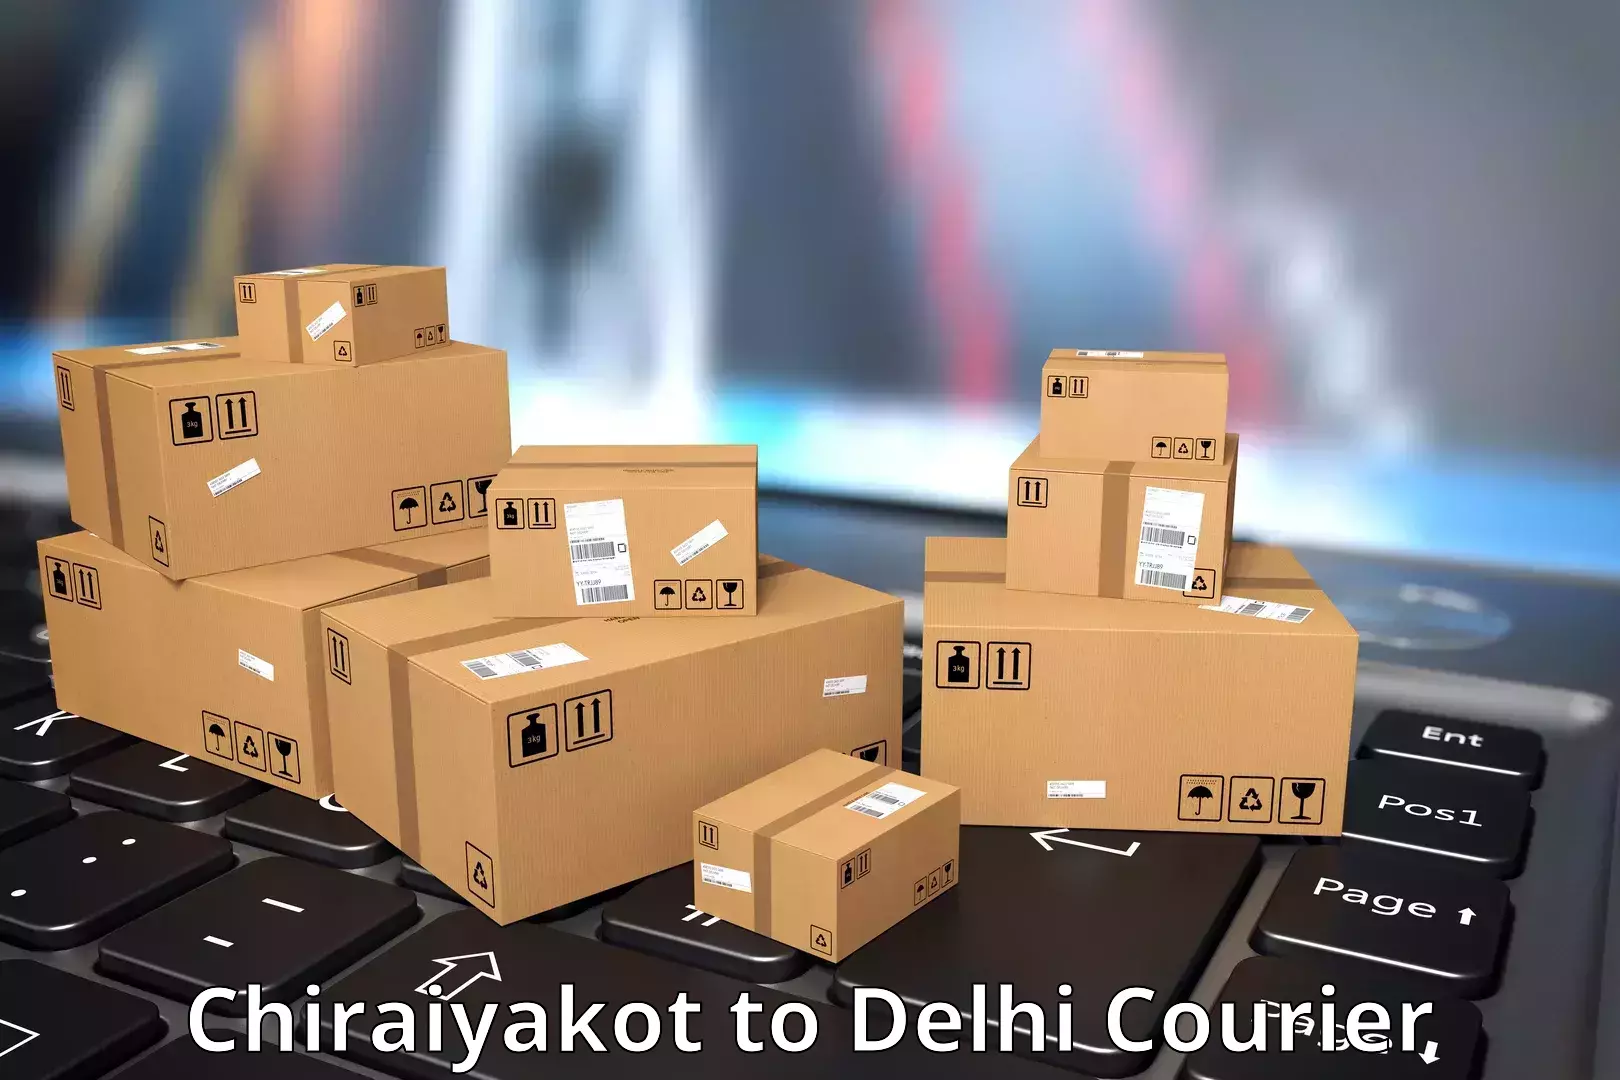 Next day courier Chiraiyakot to Jawaharlal Nehru University New Delhi